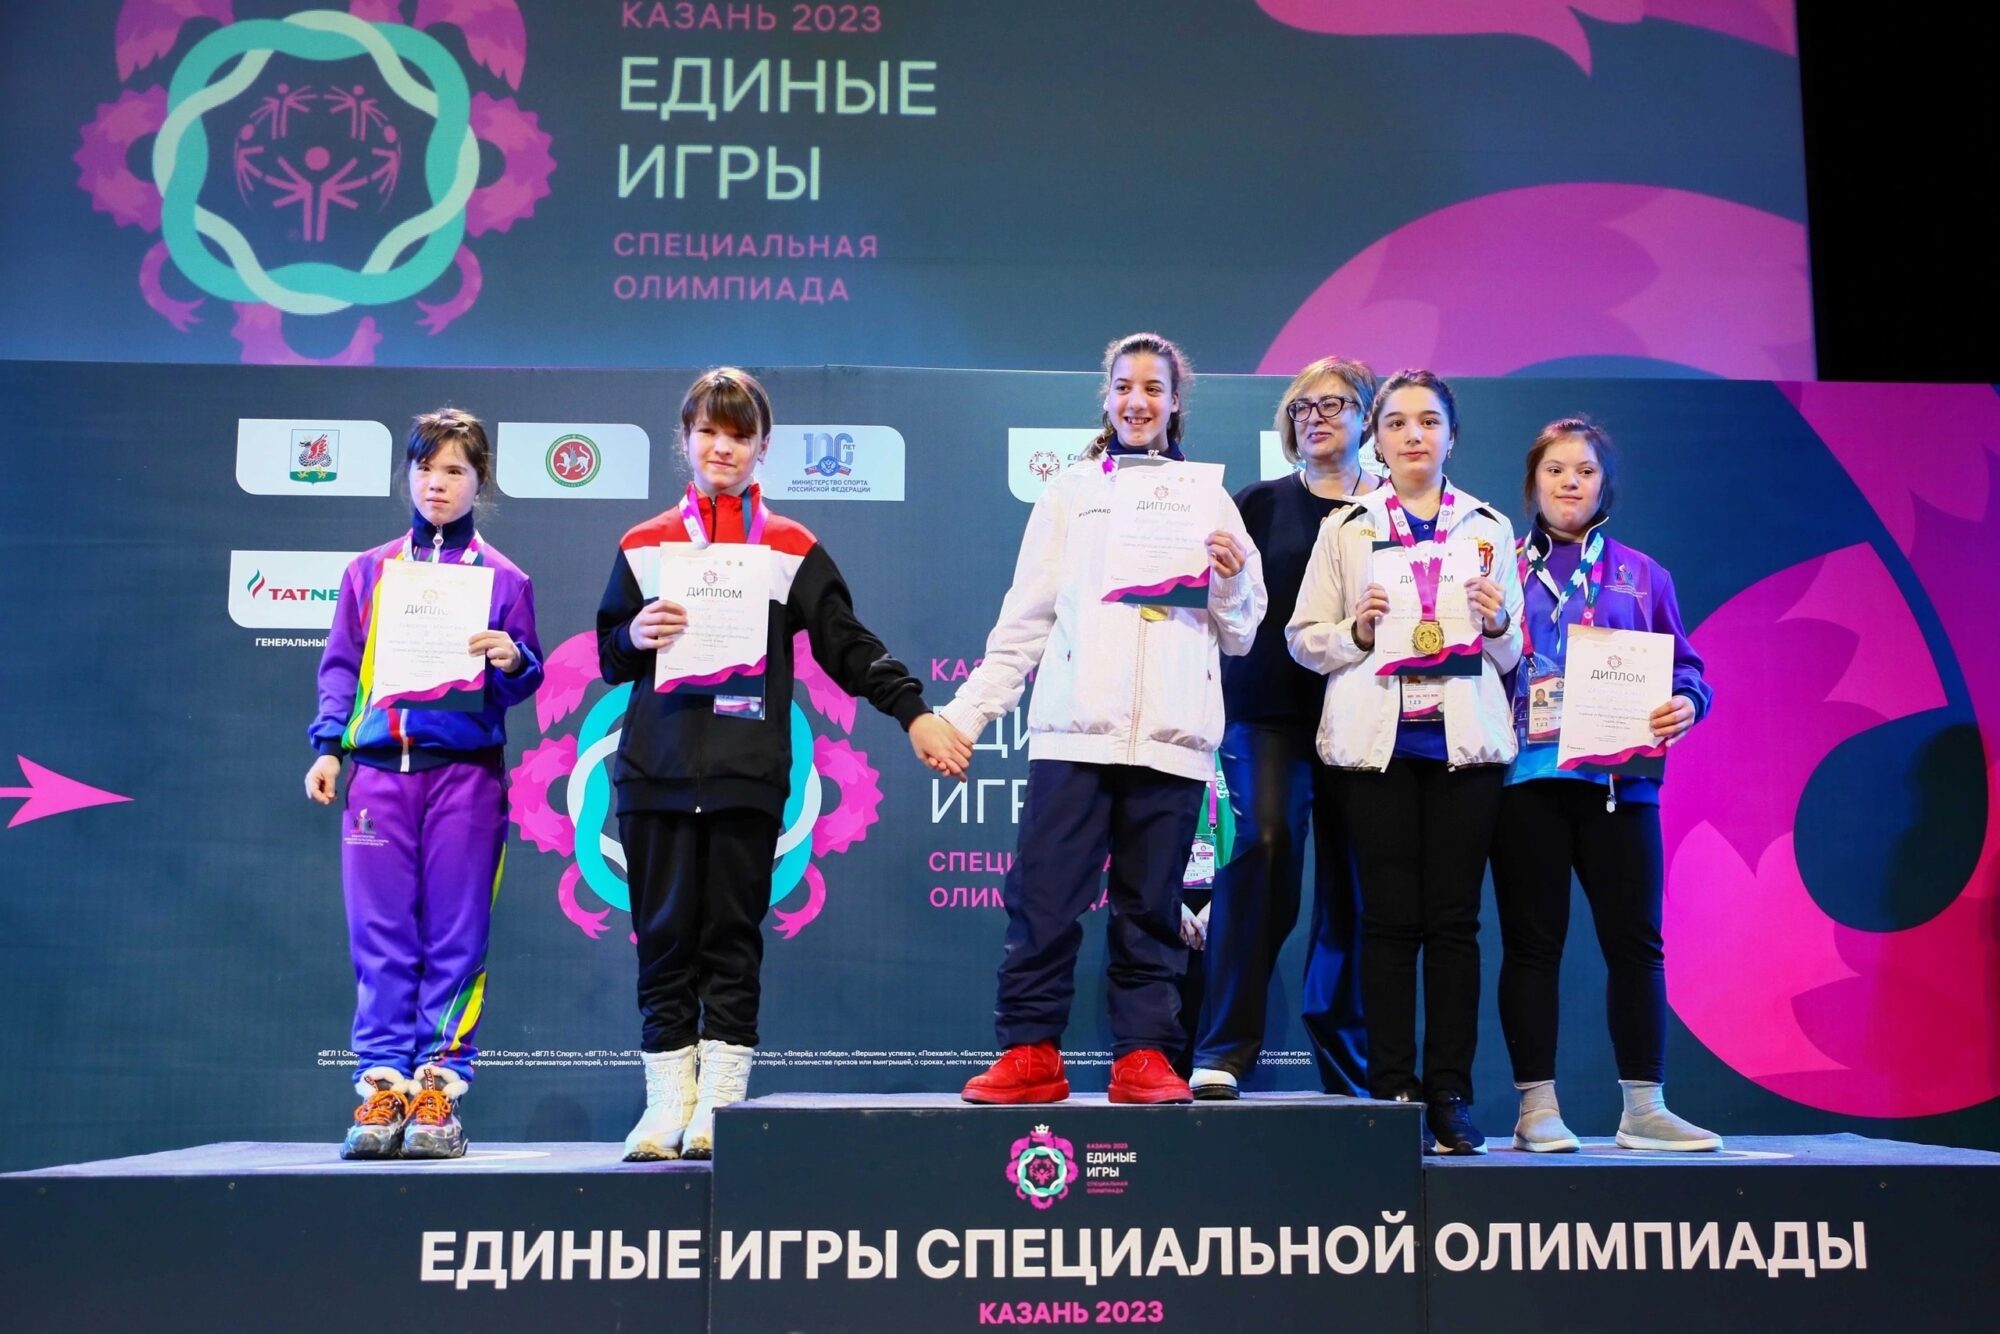 Специальная олимпиада в Казани